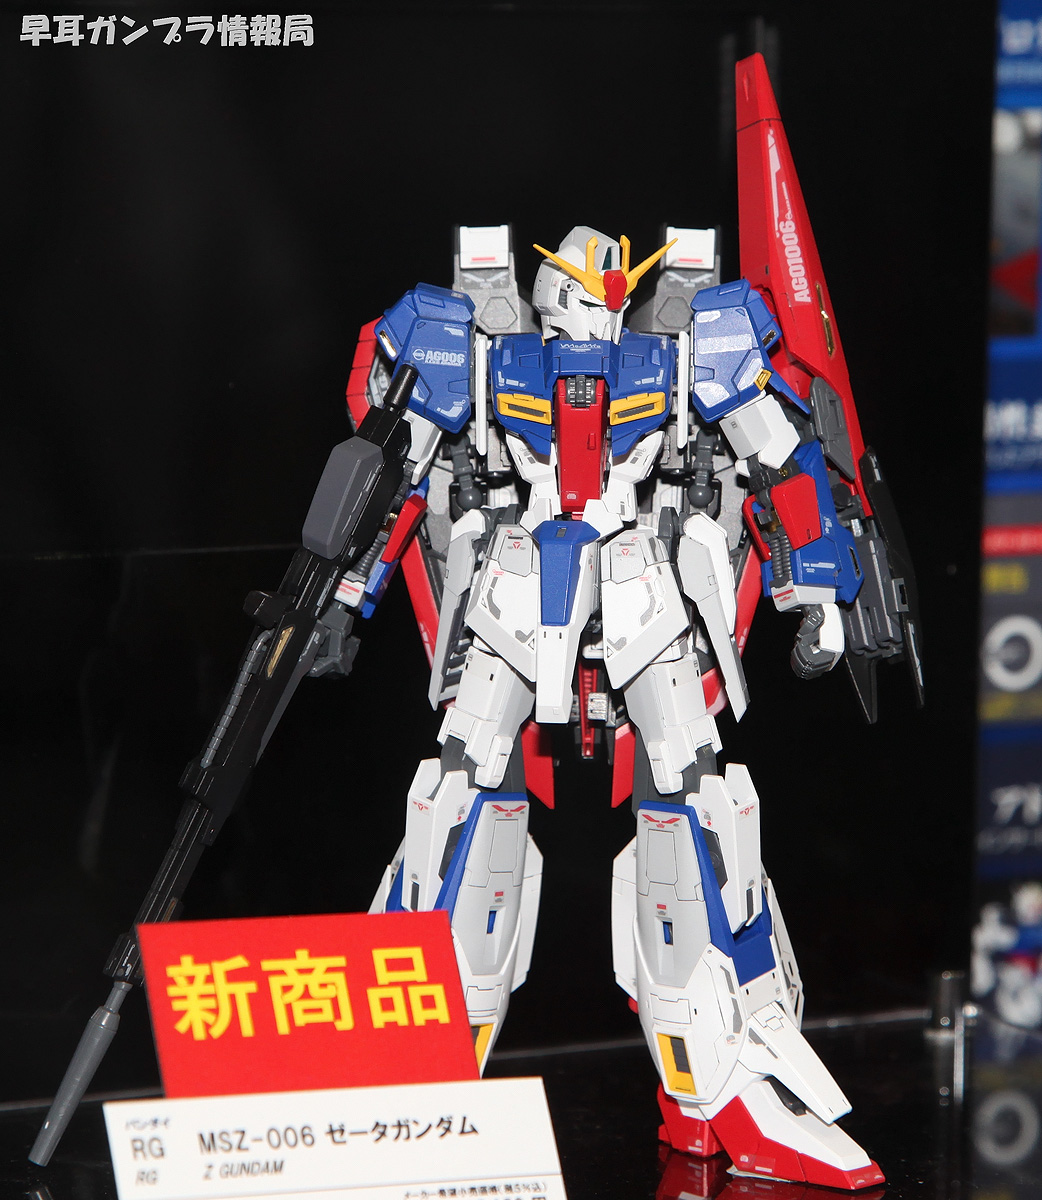 RG Zeta and Zeta Gundam Head Model Display – GUNJAP